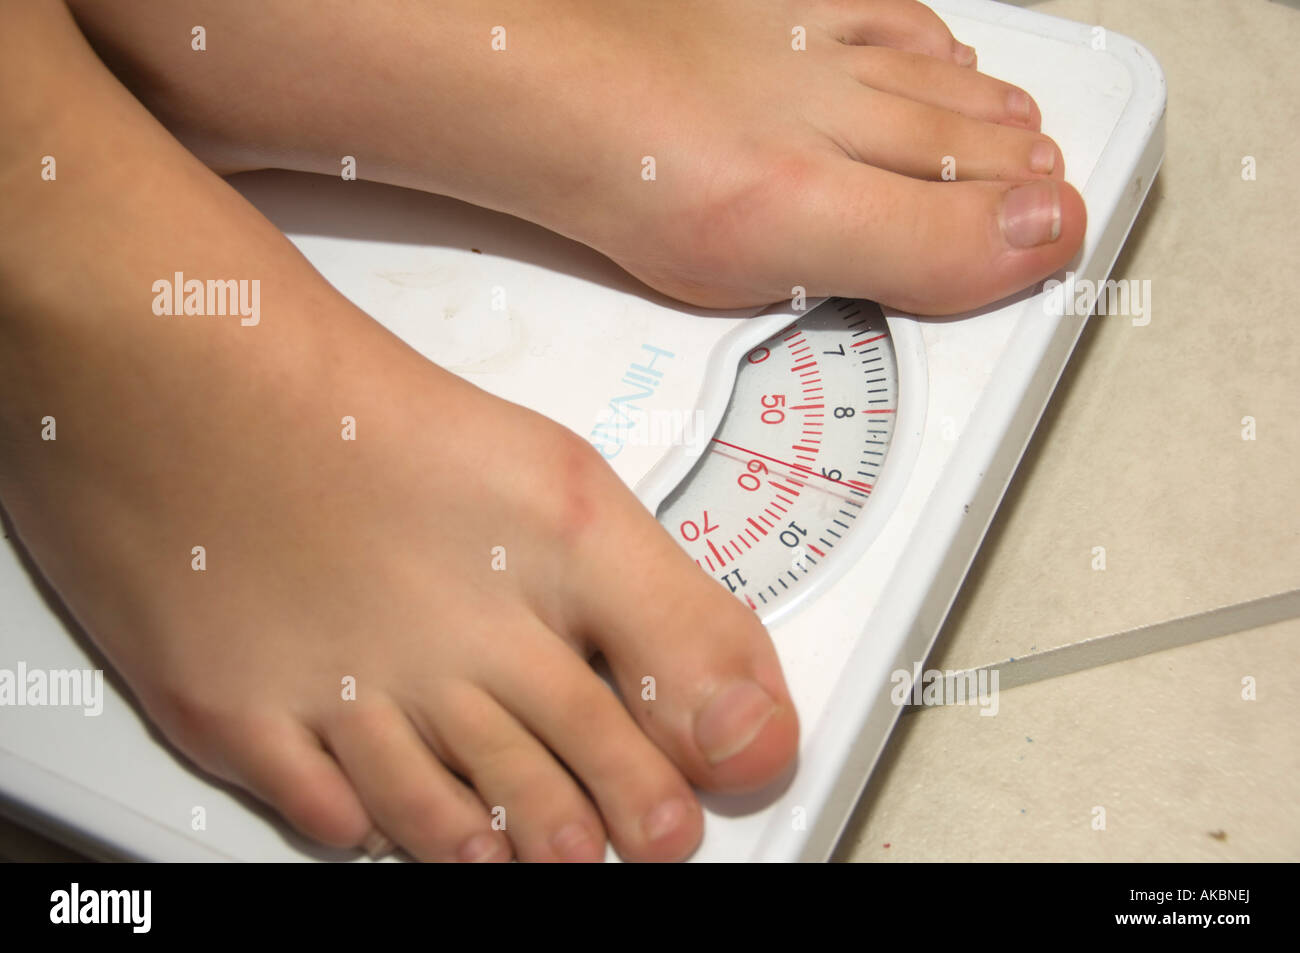 Nahaufnahme von den Füßen des jungen barfuß junge wiegen sich auf  Personenwaage - besorgt über sein Gewicht, UK Stockfotografie - Alamy